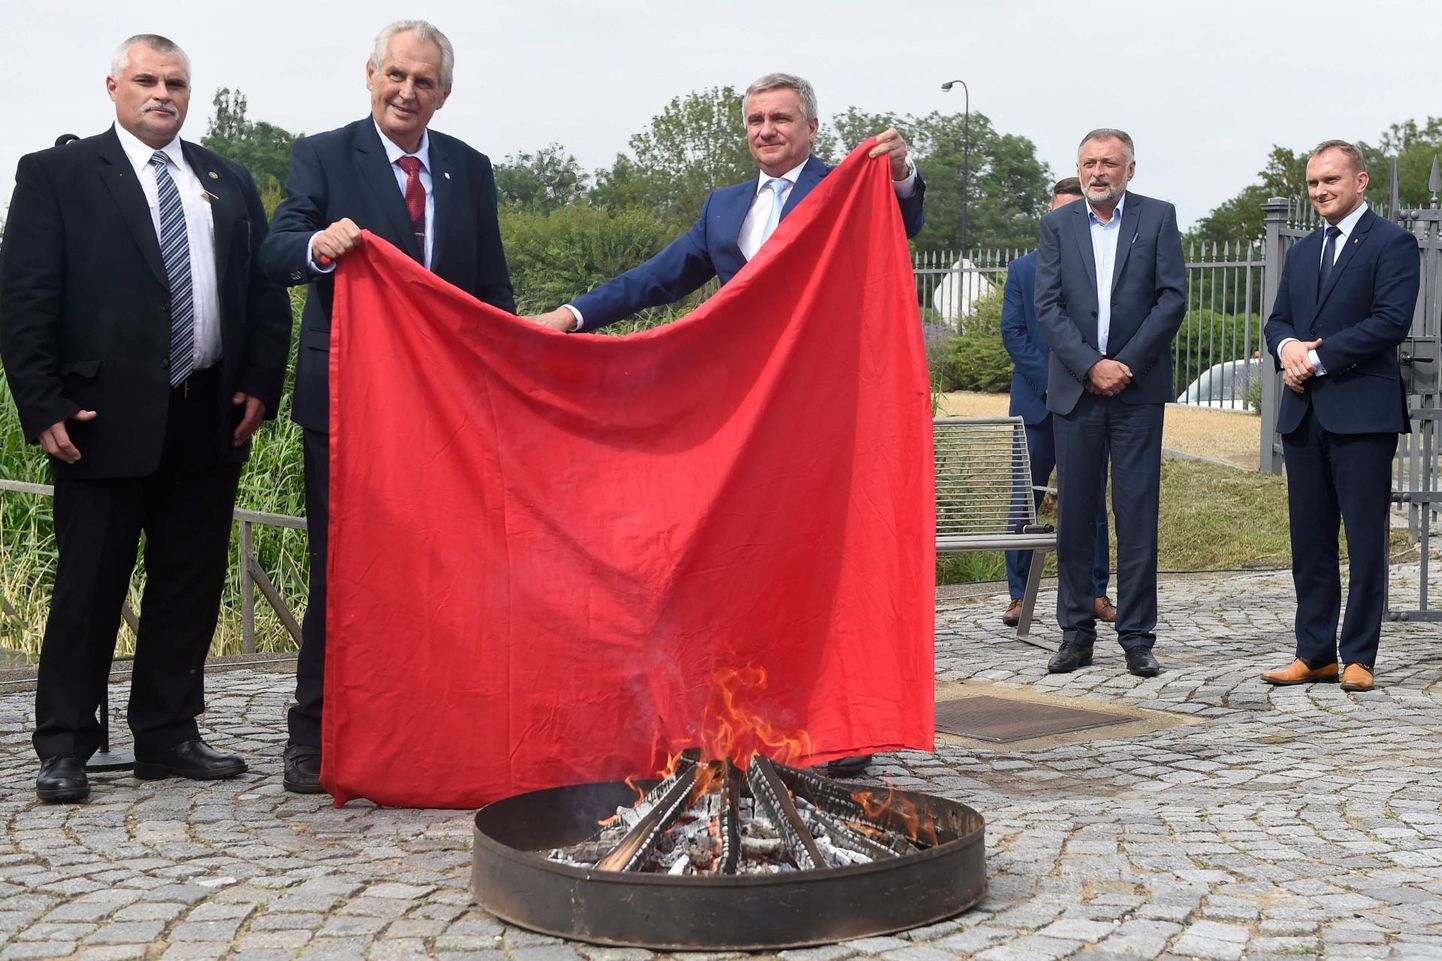 Tšehhis võib presidendi pressikonverents osutuda hoopis happening’iks: 2015. aastal tõmbas kunstnike rühmitus Ztohoven (tõlkes tähendab ühenduse nimi «vallandatud», kuid foneetiliselt kõlab see nagu «sada kakajunni») riigipea Miloš Zemani vastu protestimiseks presidendi lipu asemel Praha kindluse masti paari hiiglaslikke punaseid aluspükse. Tänavu juunis otsustas Zeman (vasakul) koos oma kantseleiülema Vratislav Mynářiga pihku haarata neid trussikuid kujutava suure punase riidelahmaka ning selle ajakirjanike silme ees põlema pista. 